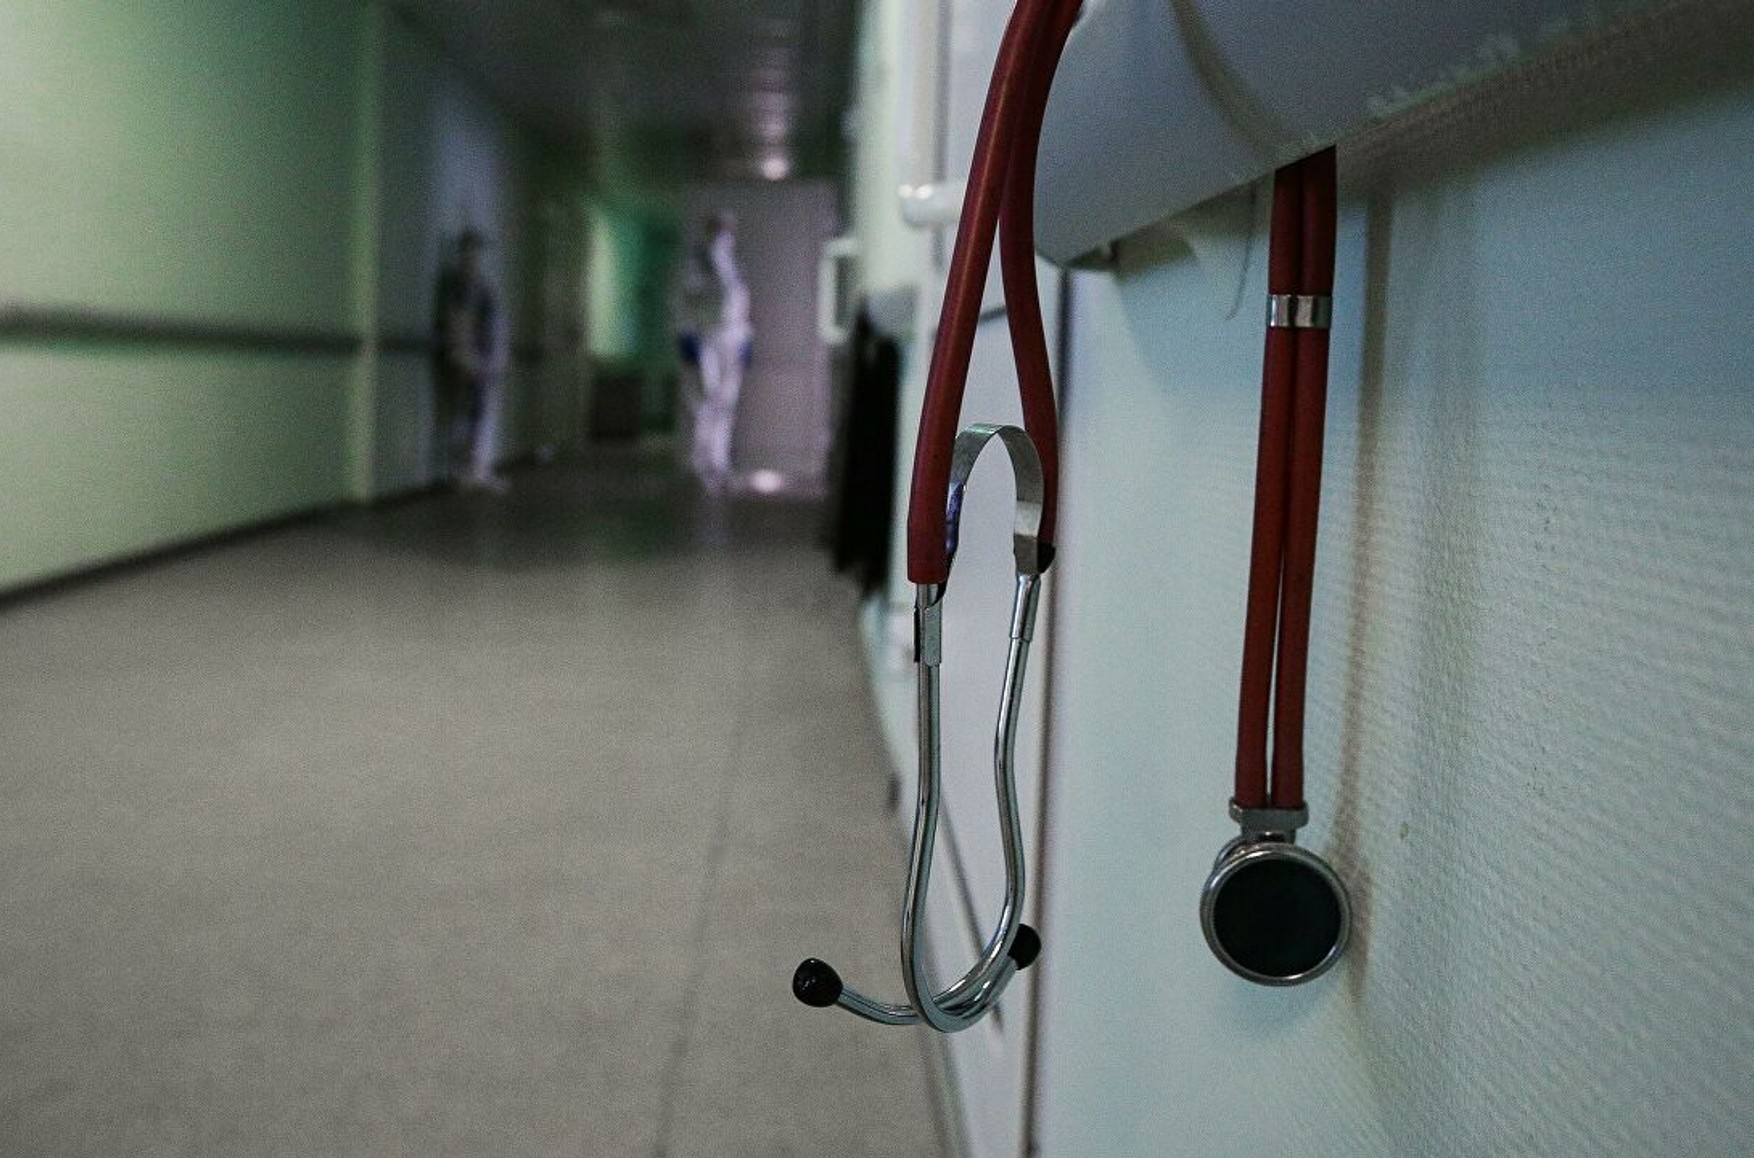 Депздрав Москви проводить перевірку лікарні, де медсестри знущалися над пацієнткою - відео